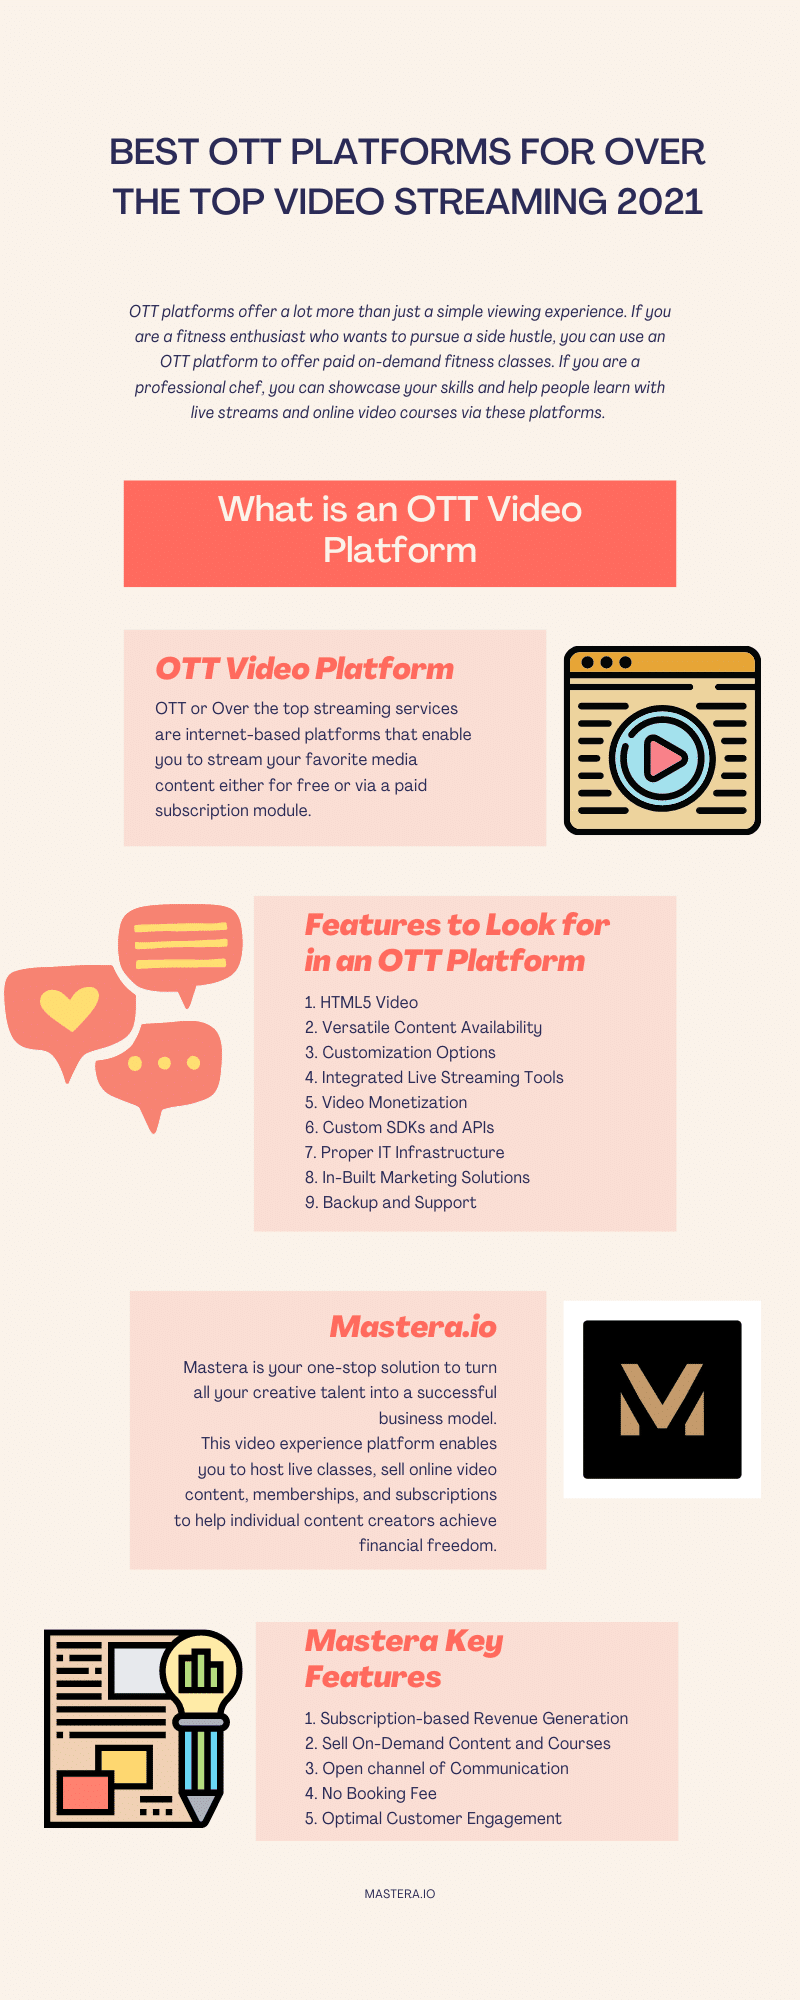 Best OTT Platforms for Video Streaming